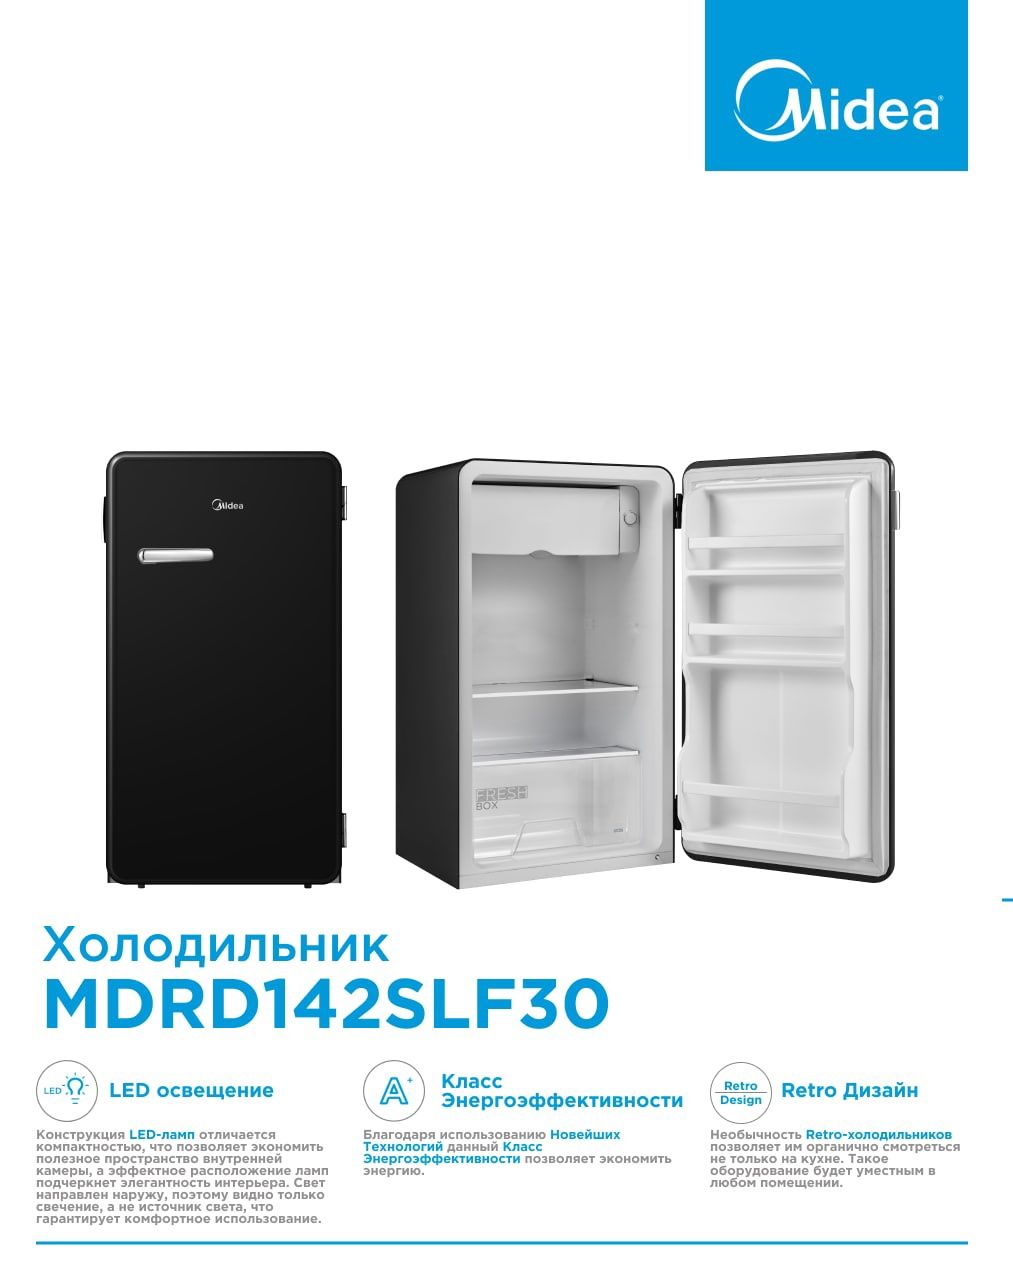 Холодильник Midea MDRD142